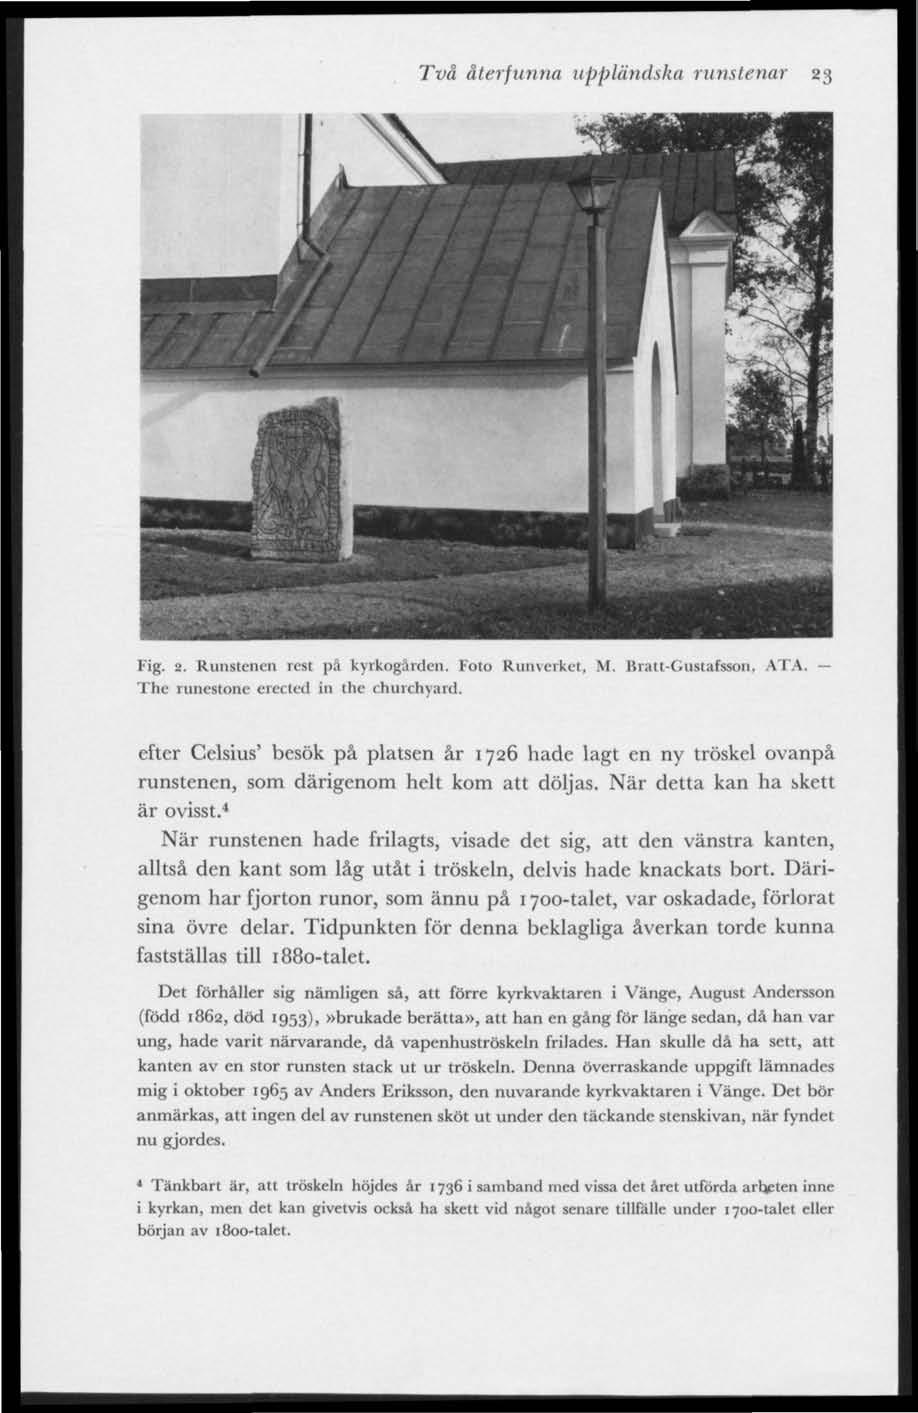 Två återfunna uppländska runstenar 23 HHBraBBjaBkW Fig. 2. Runstenen rest pä kyrkogården. Foto Runverket, M. Bratt-Gustafsson, ATA. The runestone erected iu the churchyard.